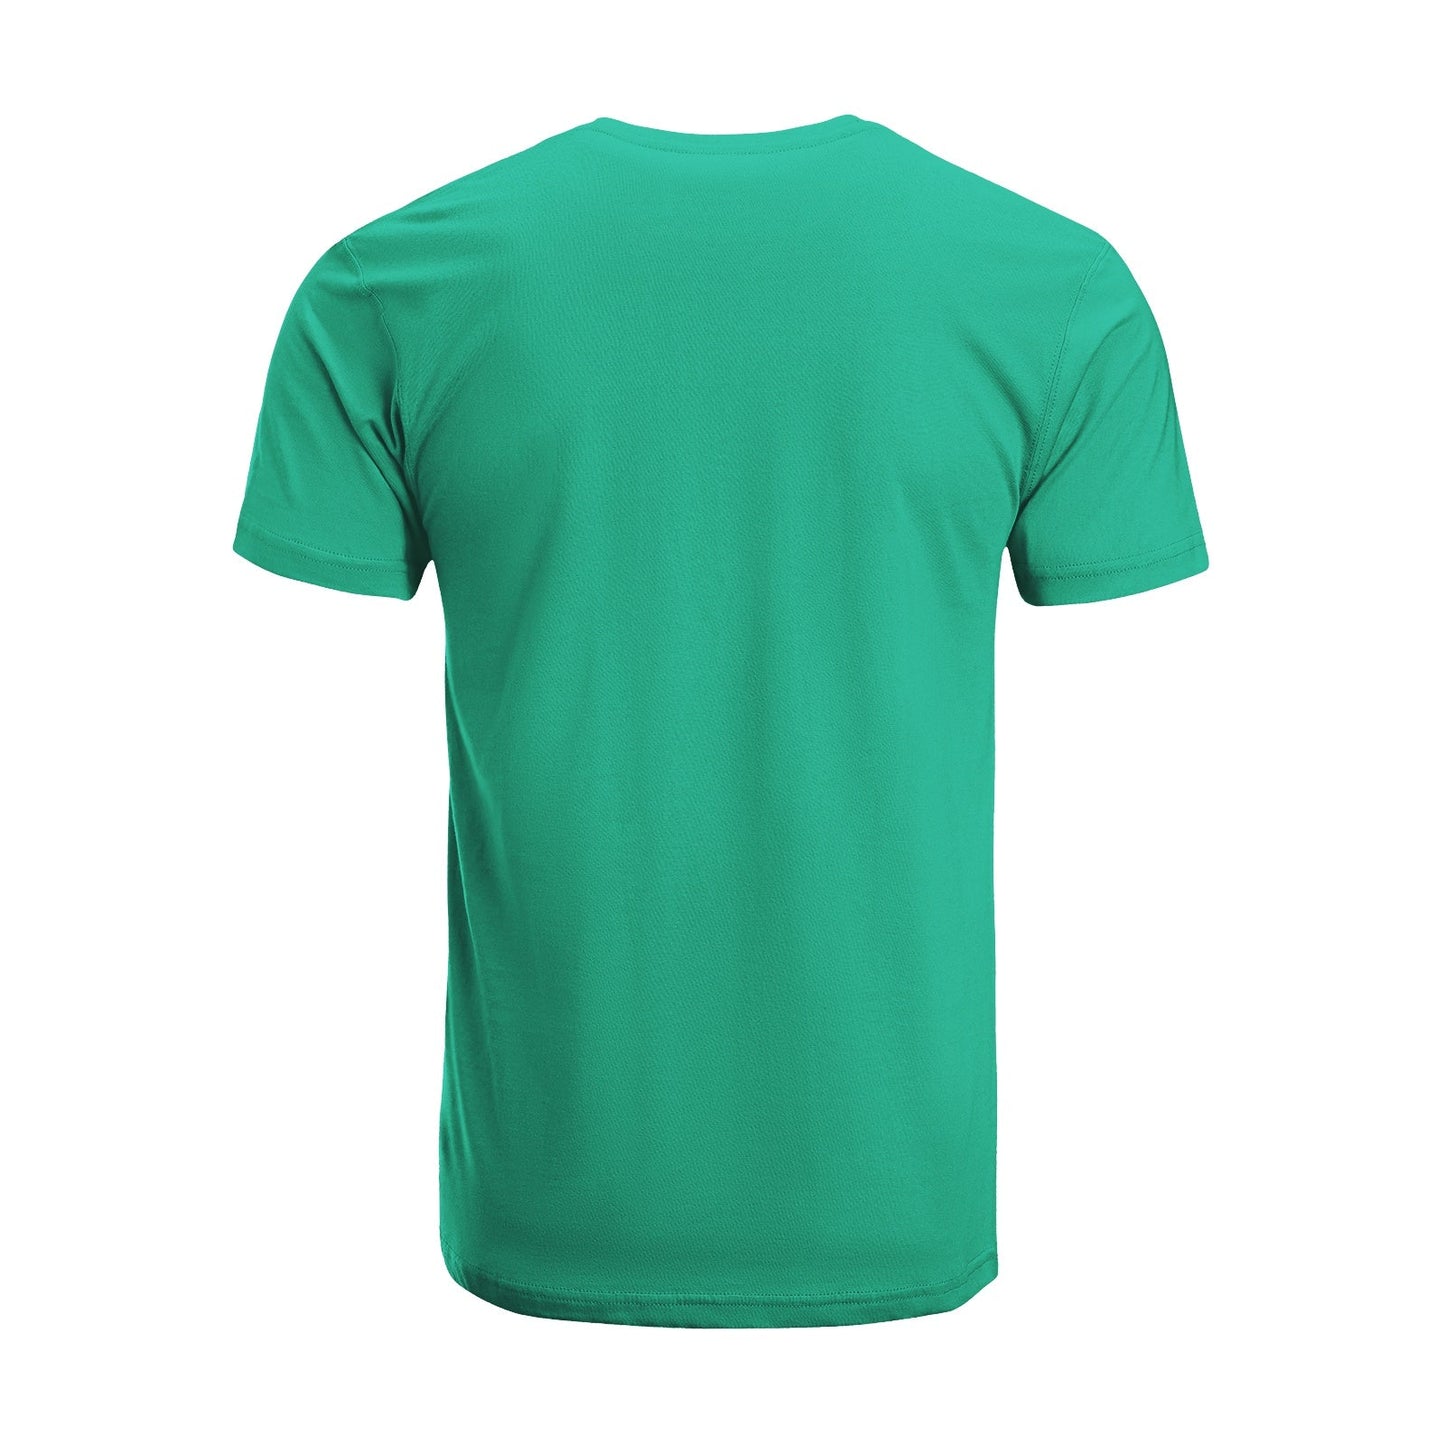 Unisex Short Sleeve Crew Neck Cotton Jersey T-Shirt TRUCK 39